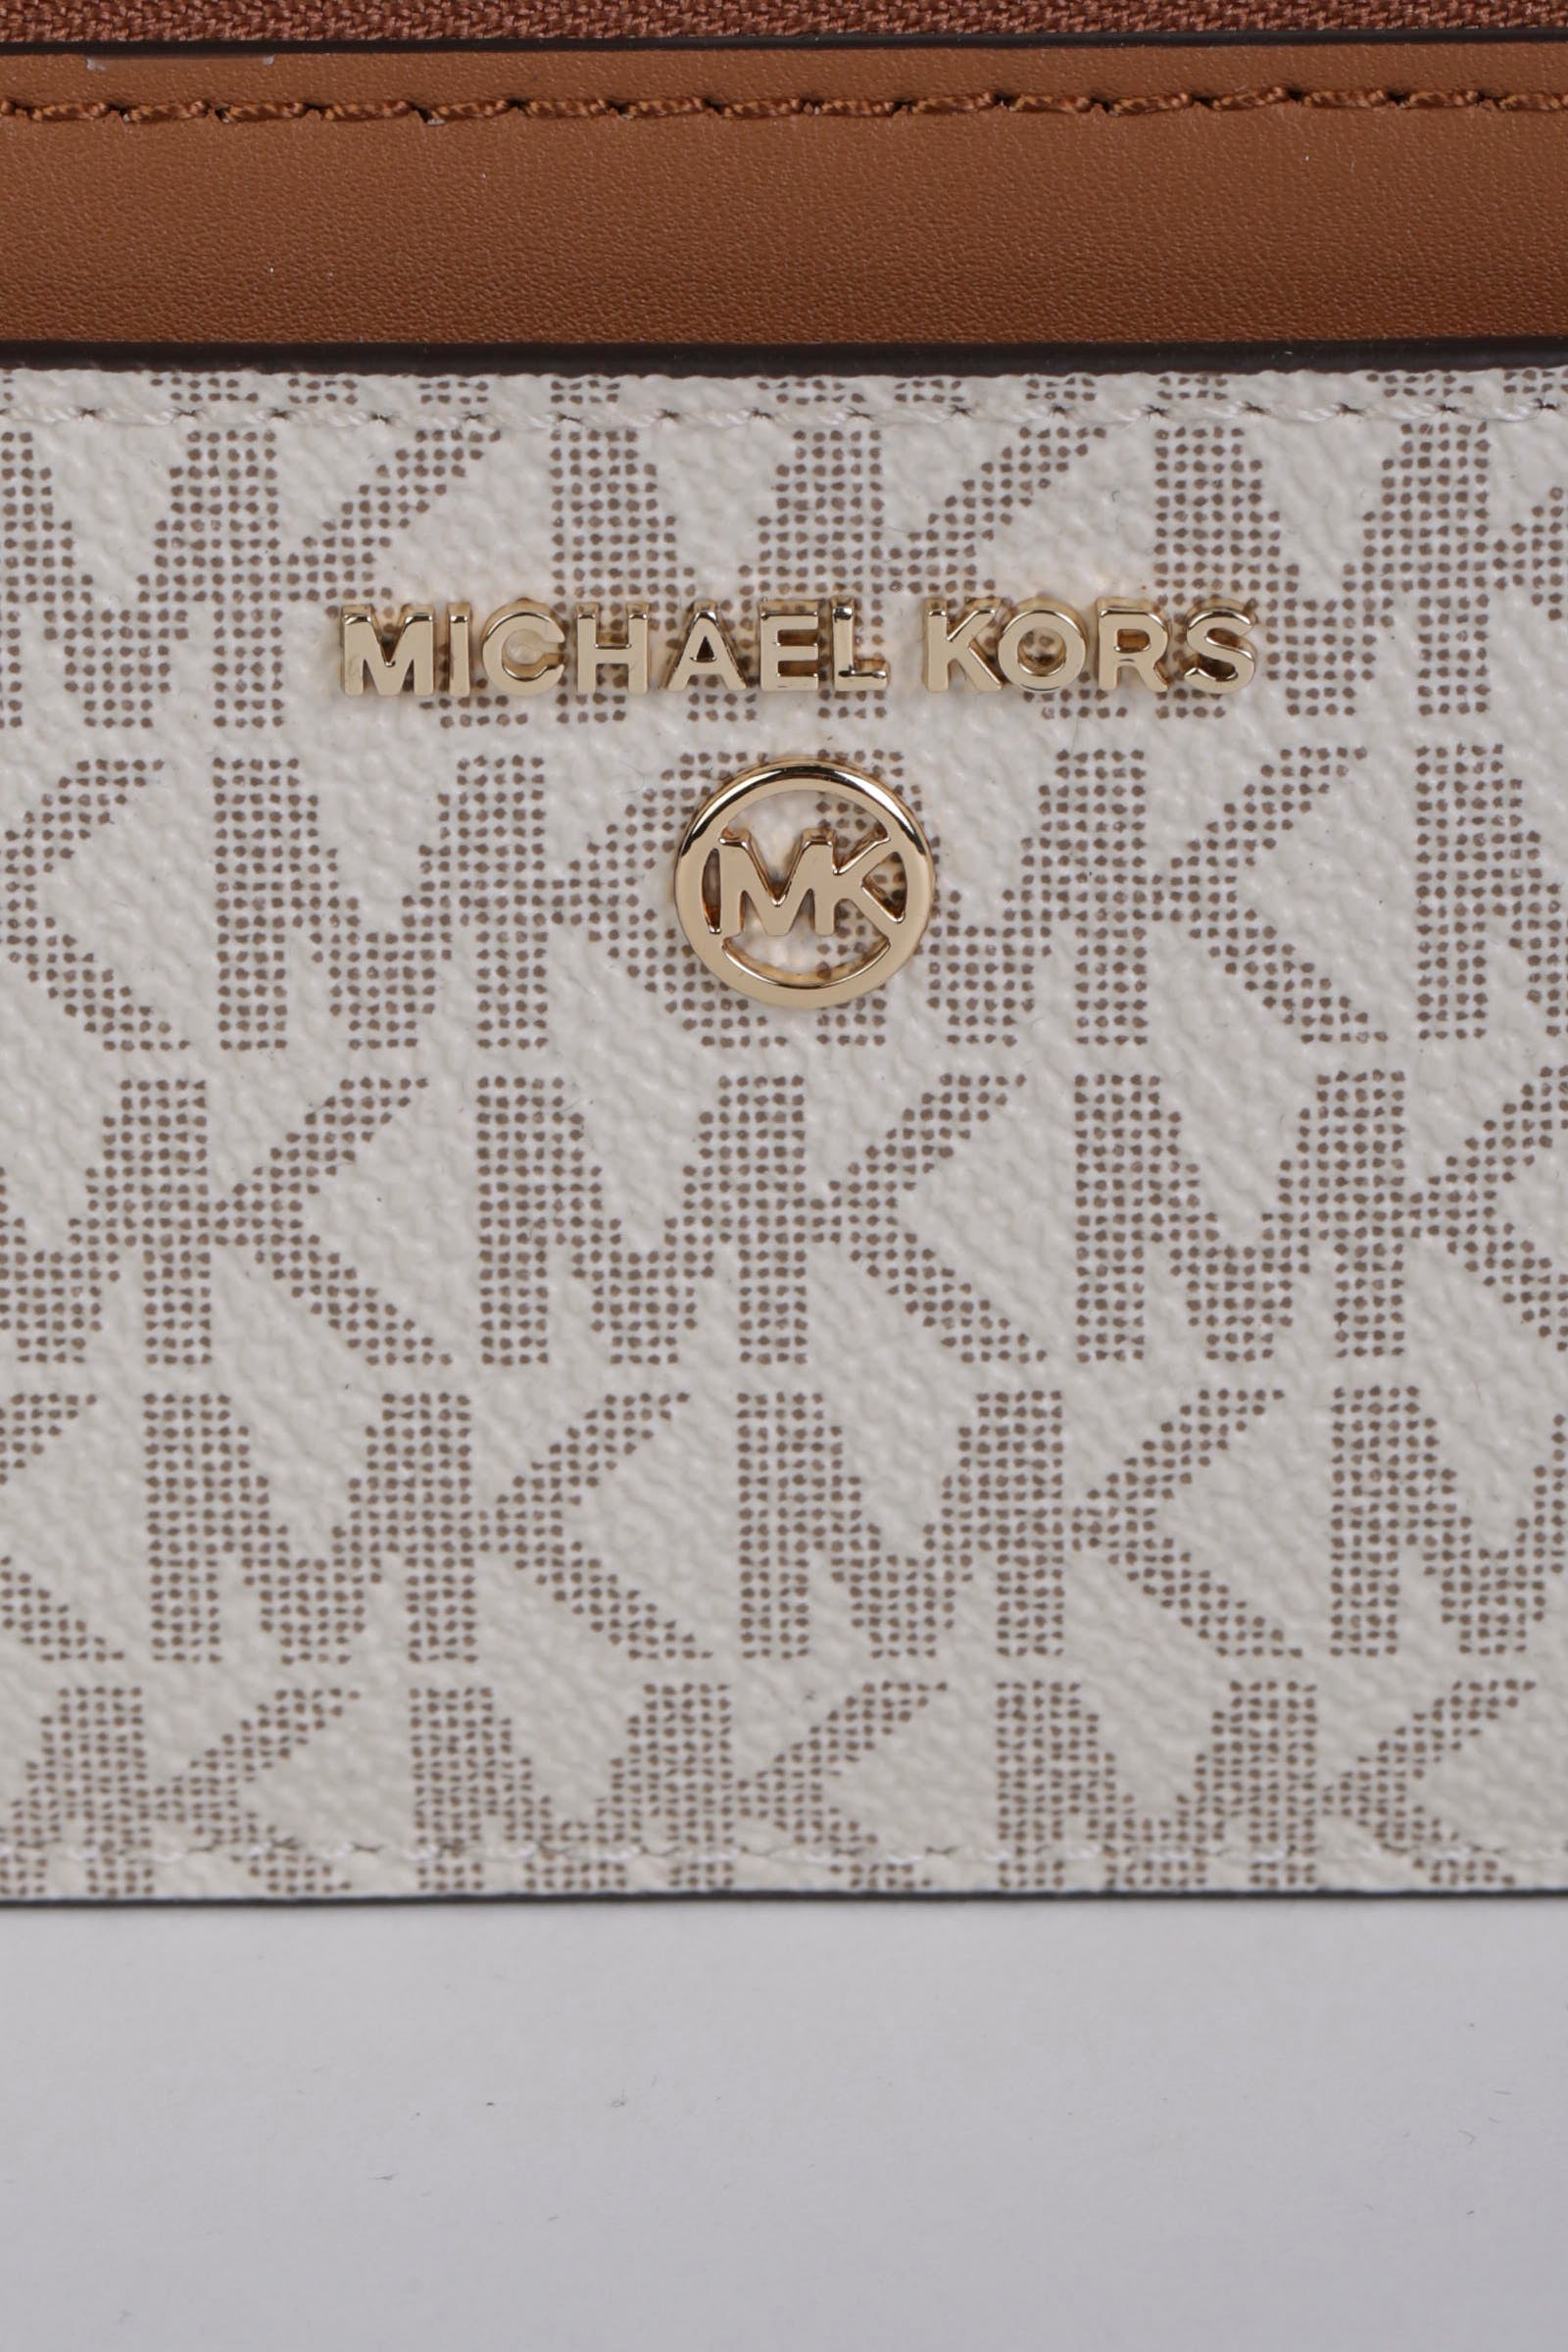 MICHAEL KORS Portafogli monogram vanilla con portachiavi